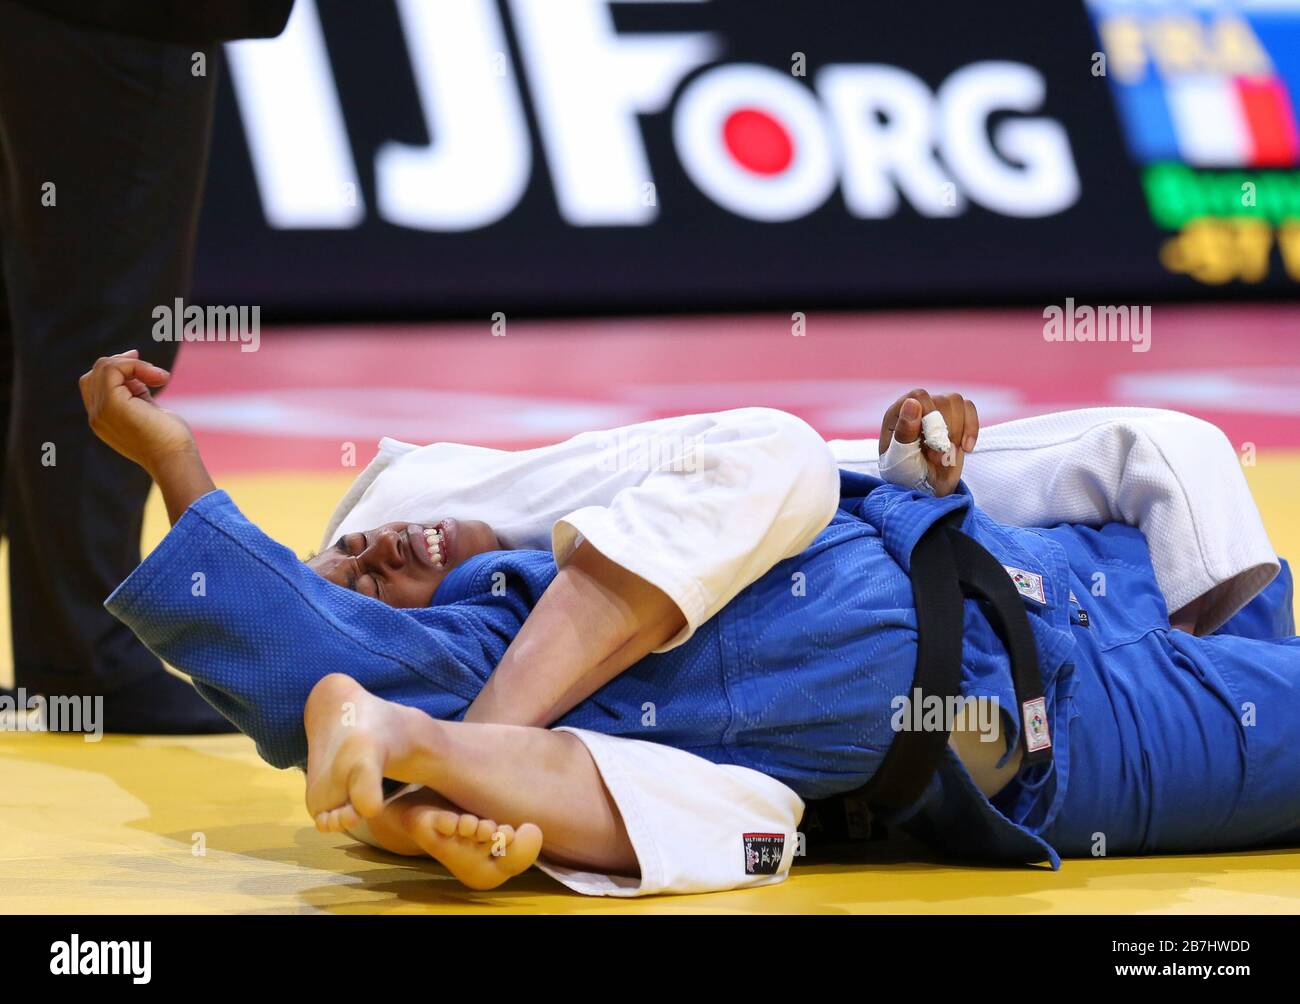 Paris, France - 08 février 2020: Nora Gjakova pour le Kosovo (blanc) contre Sarah Leonie Cysique pour la France (bleu), femmes -57 kg, médaille de bronze Match (crédit: Mickael Chavet) Banque D'Images